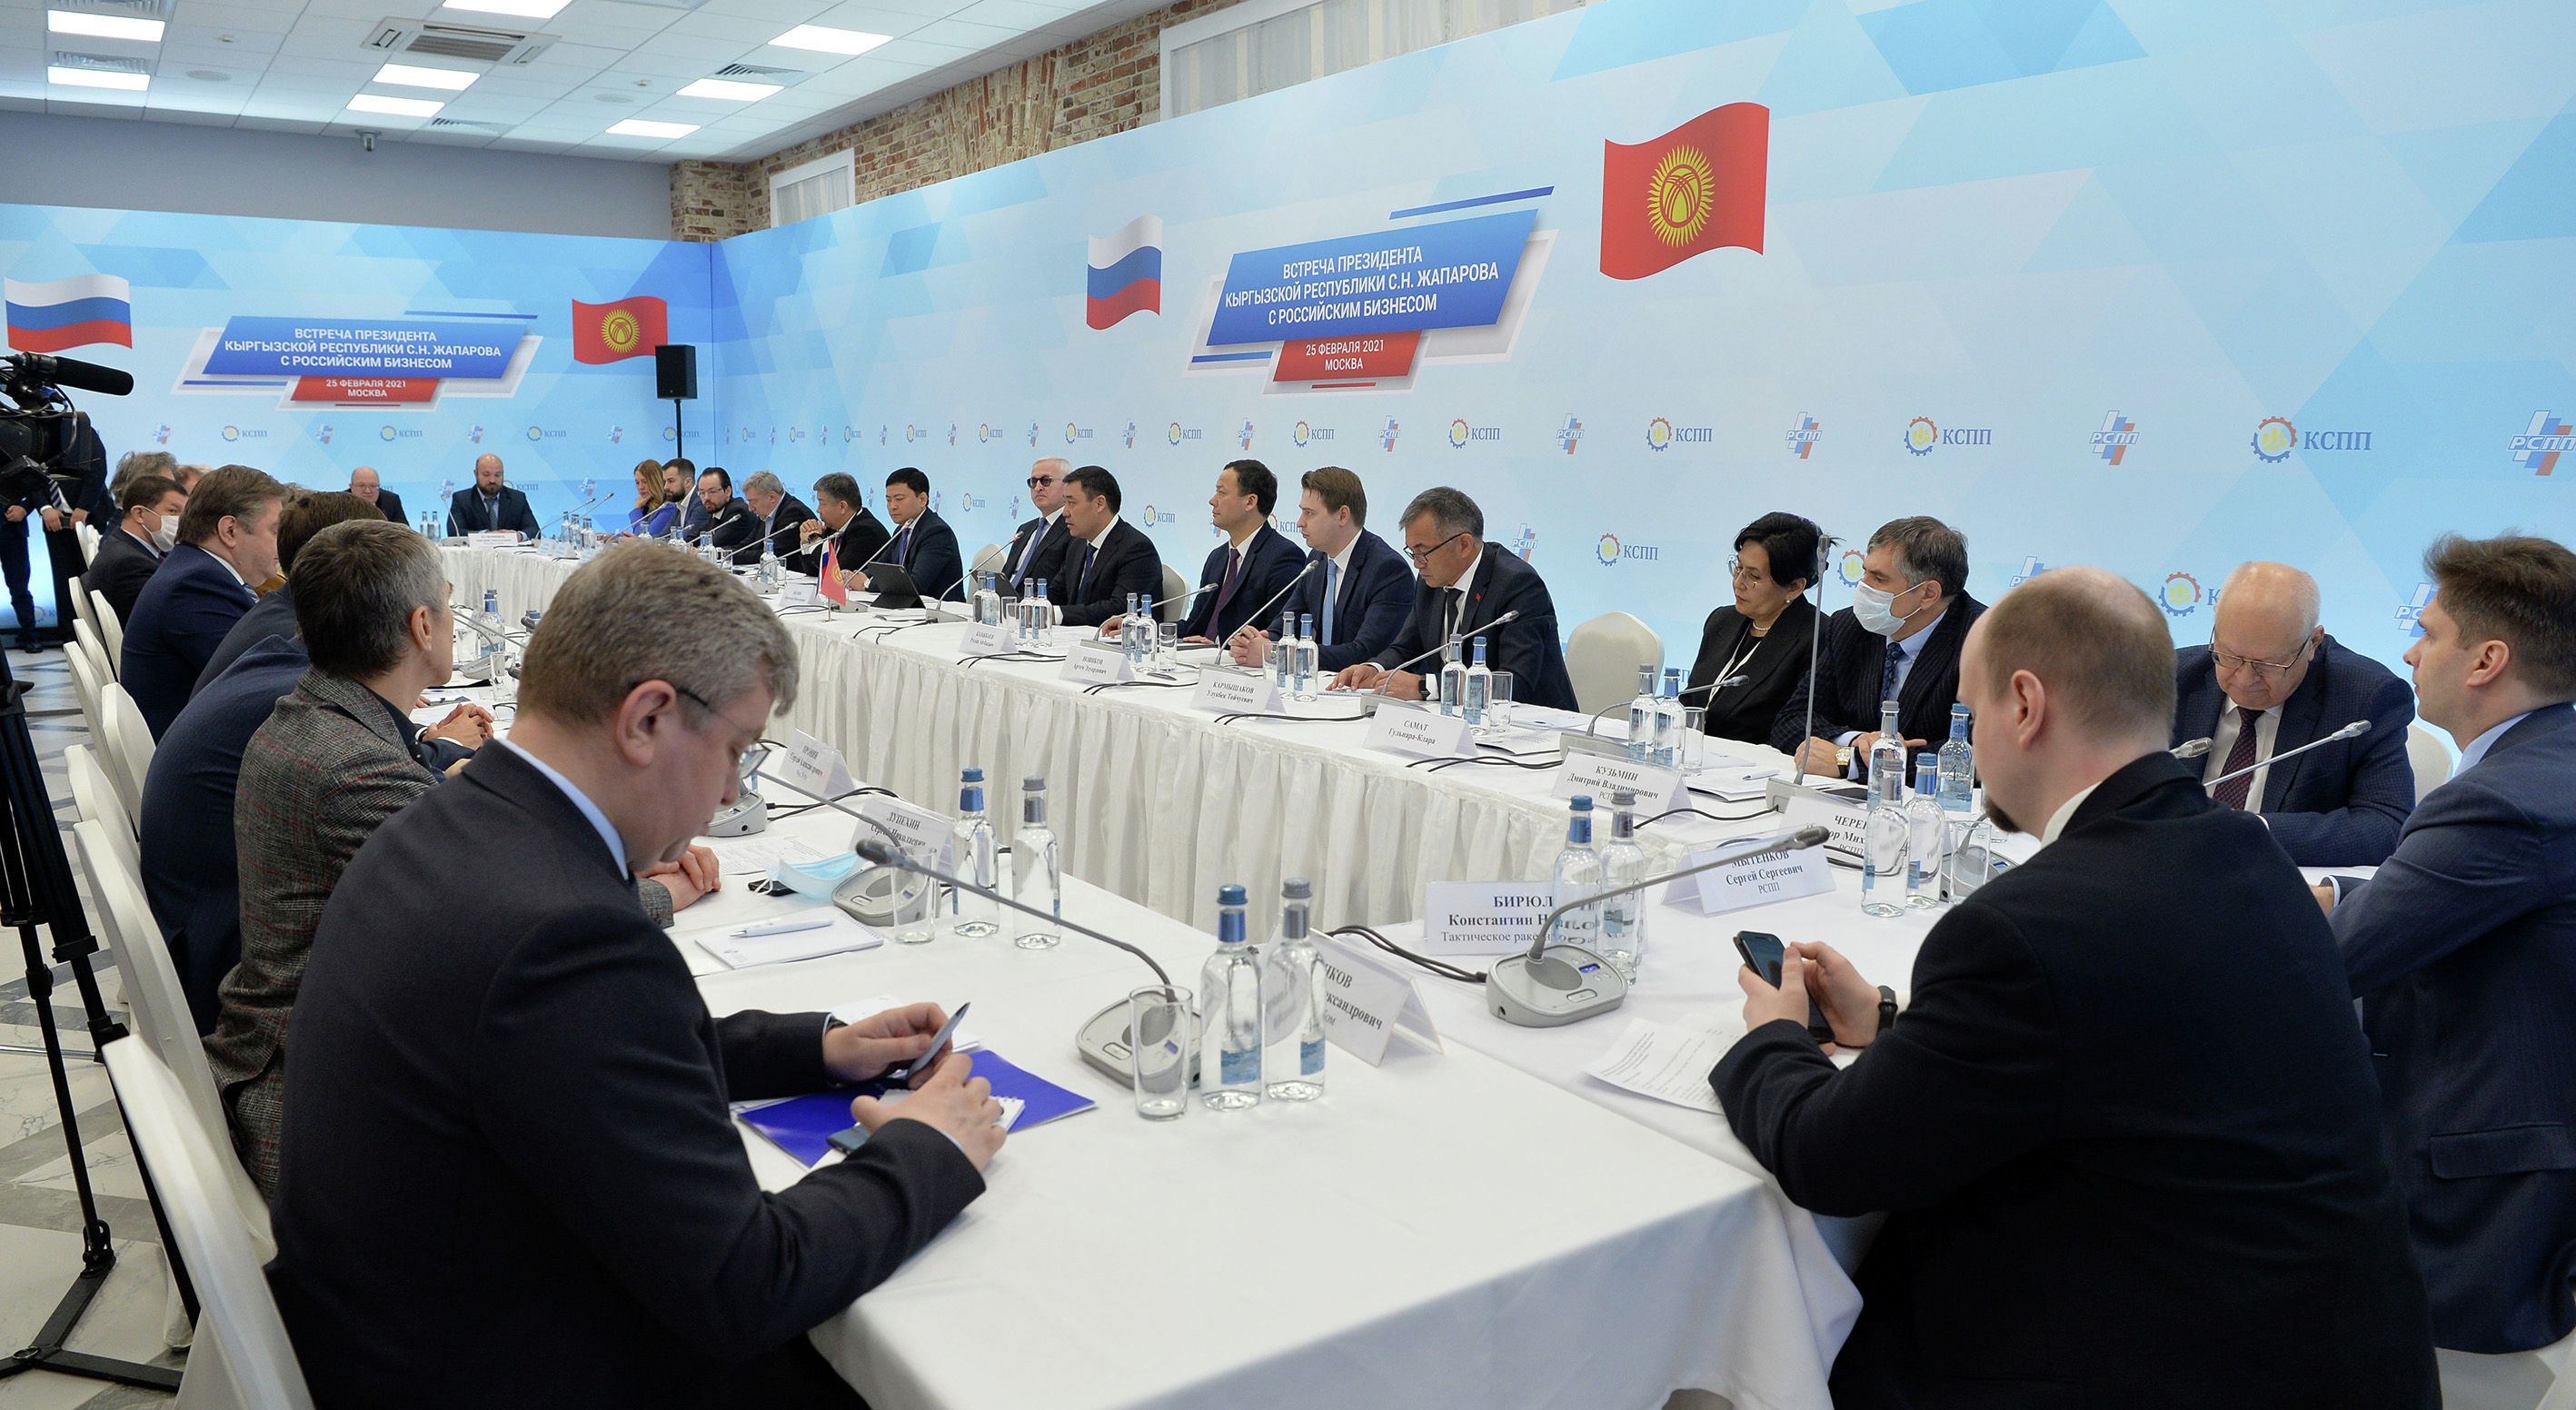  Президент Кыргызстана Садыр Жапаров встретился с представителями крупного российского бизнеса в Москве в рамках своего визита в РФ